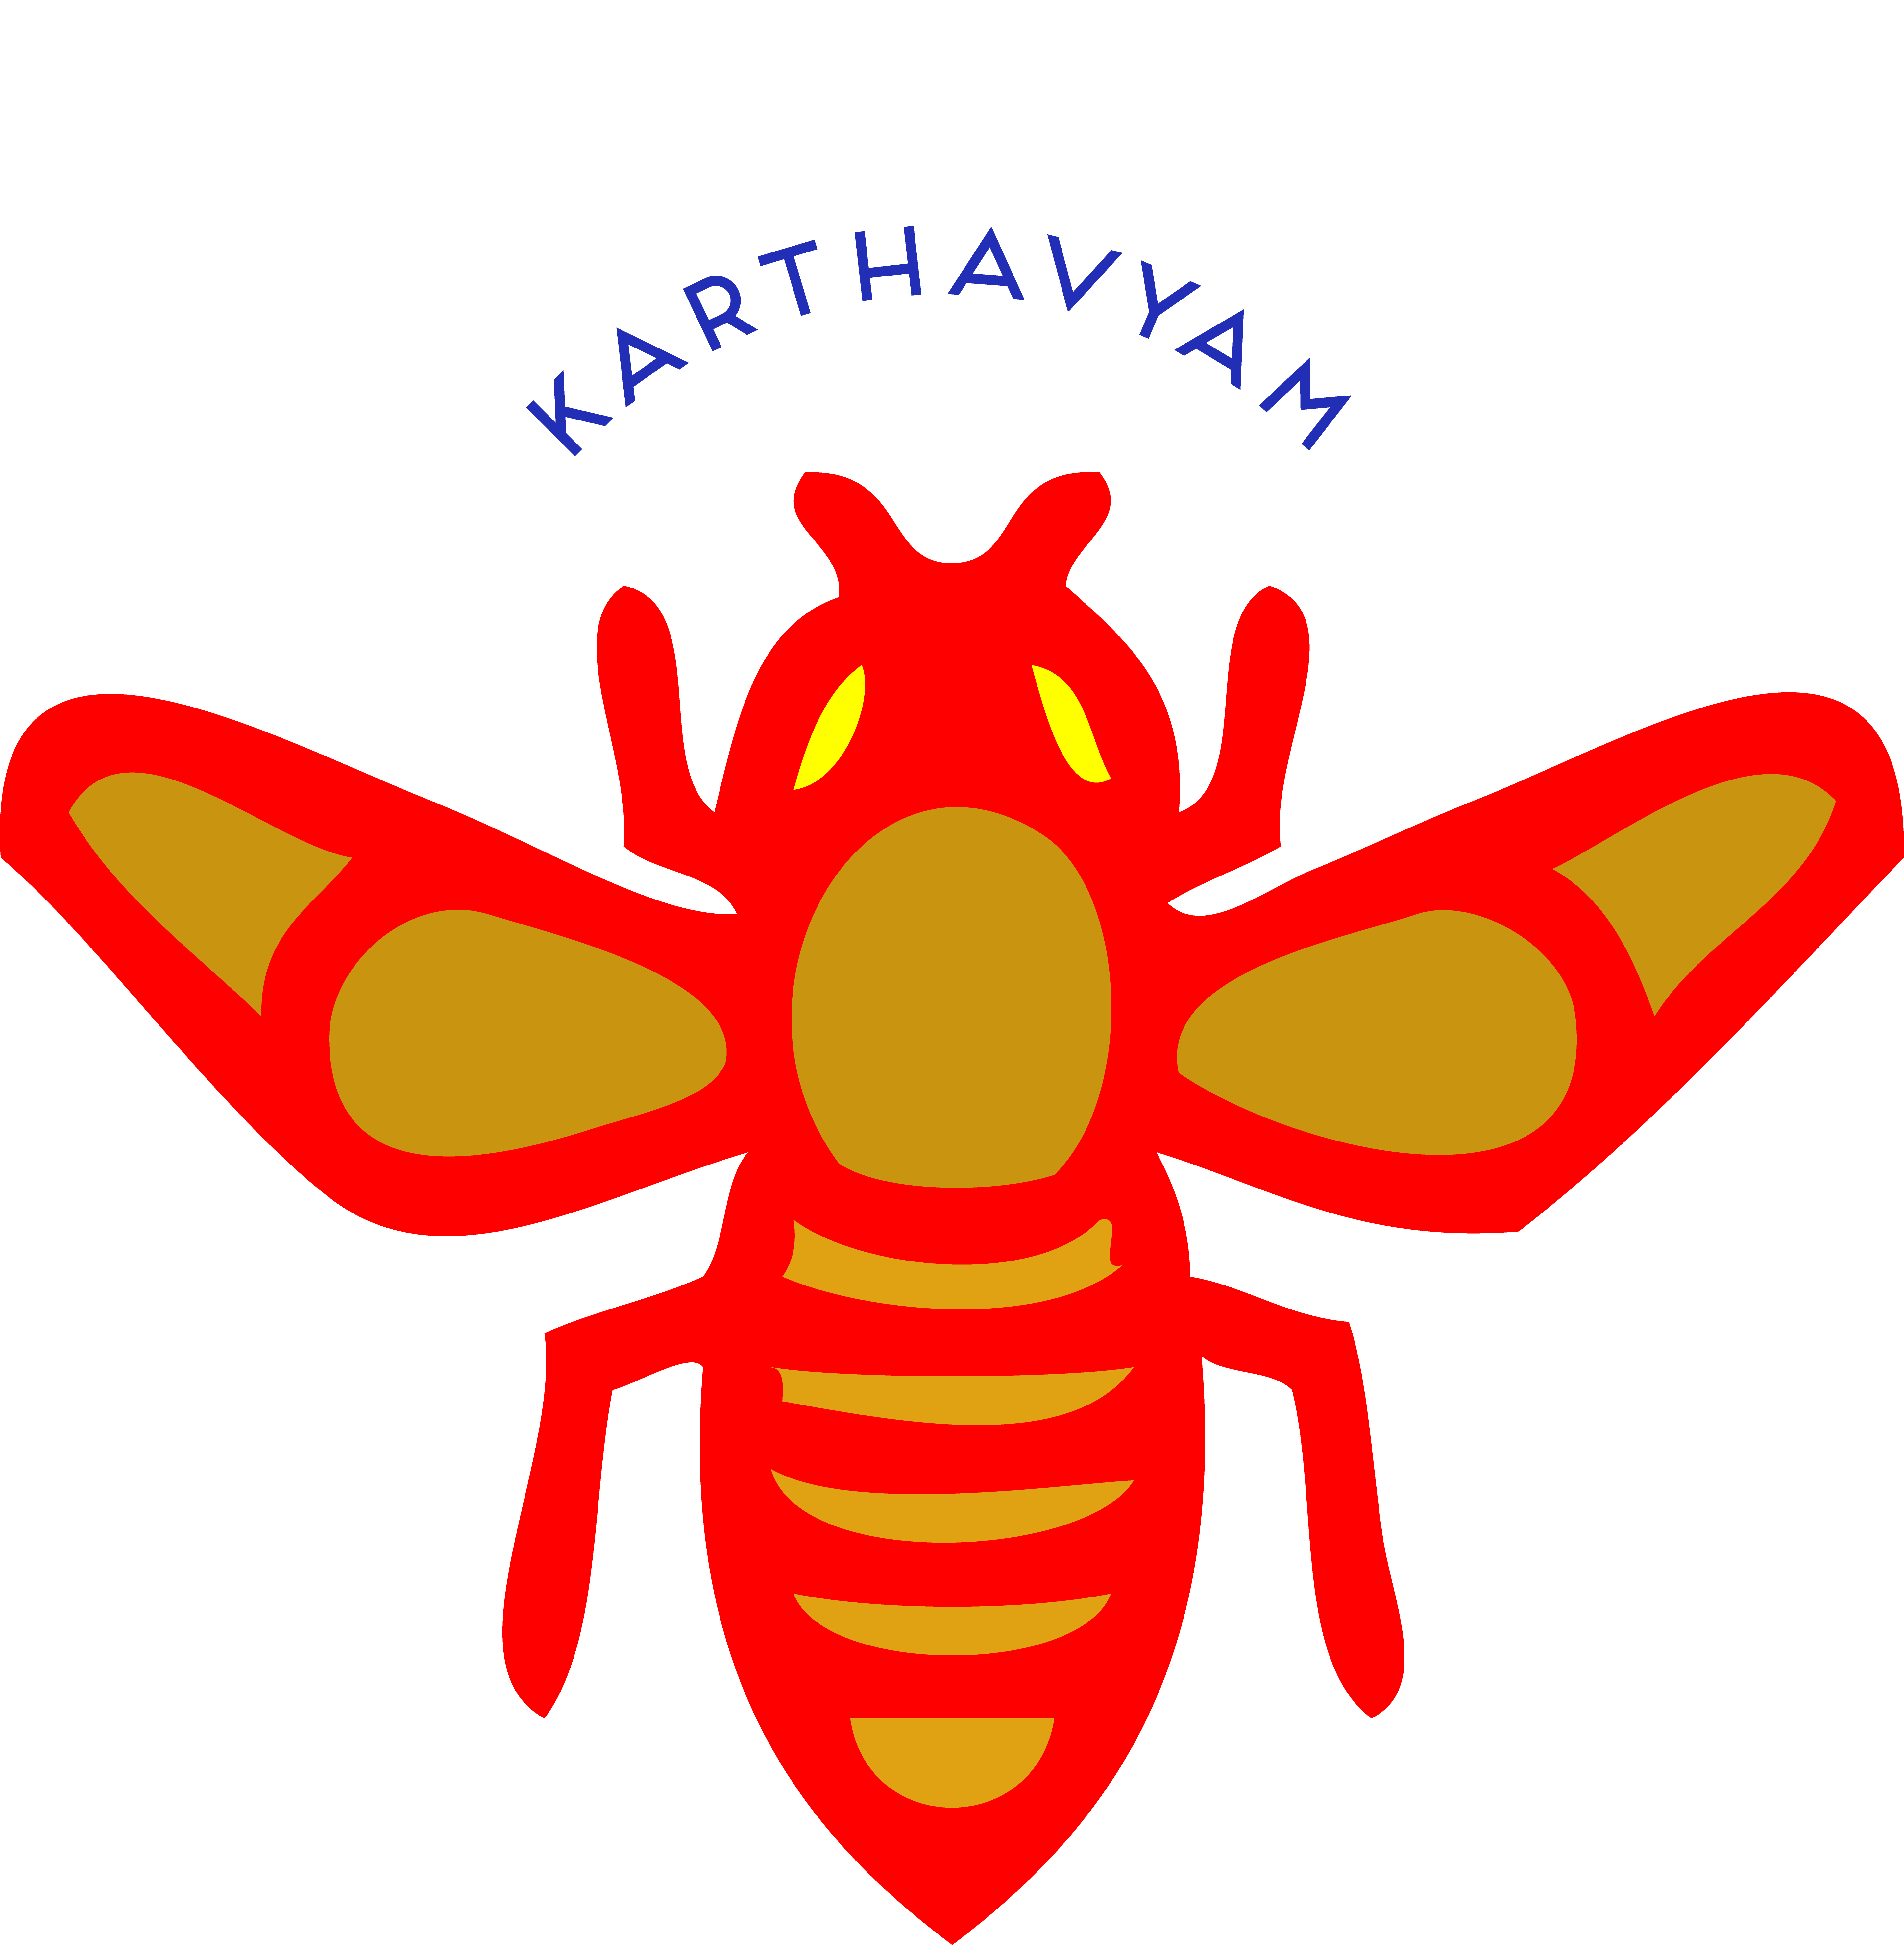 karthavyam